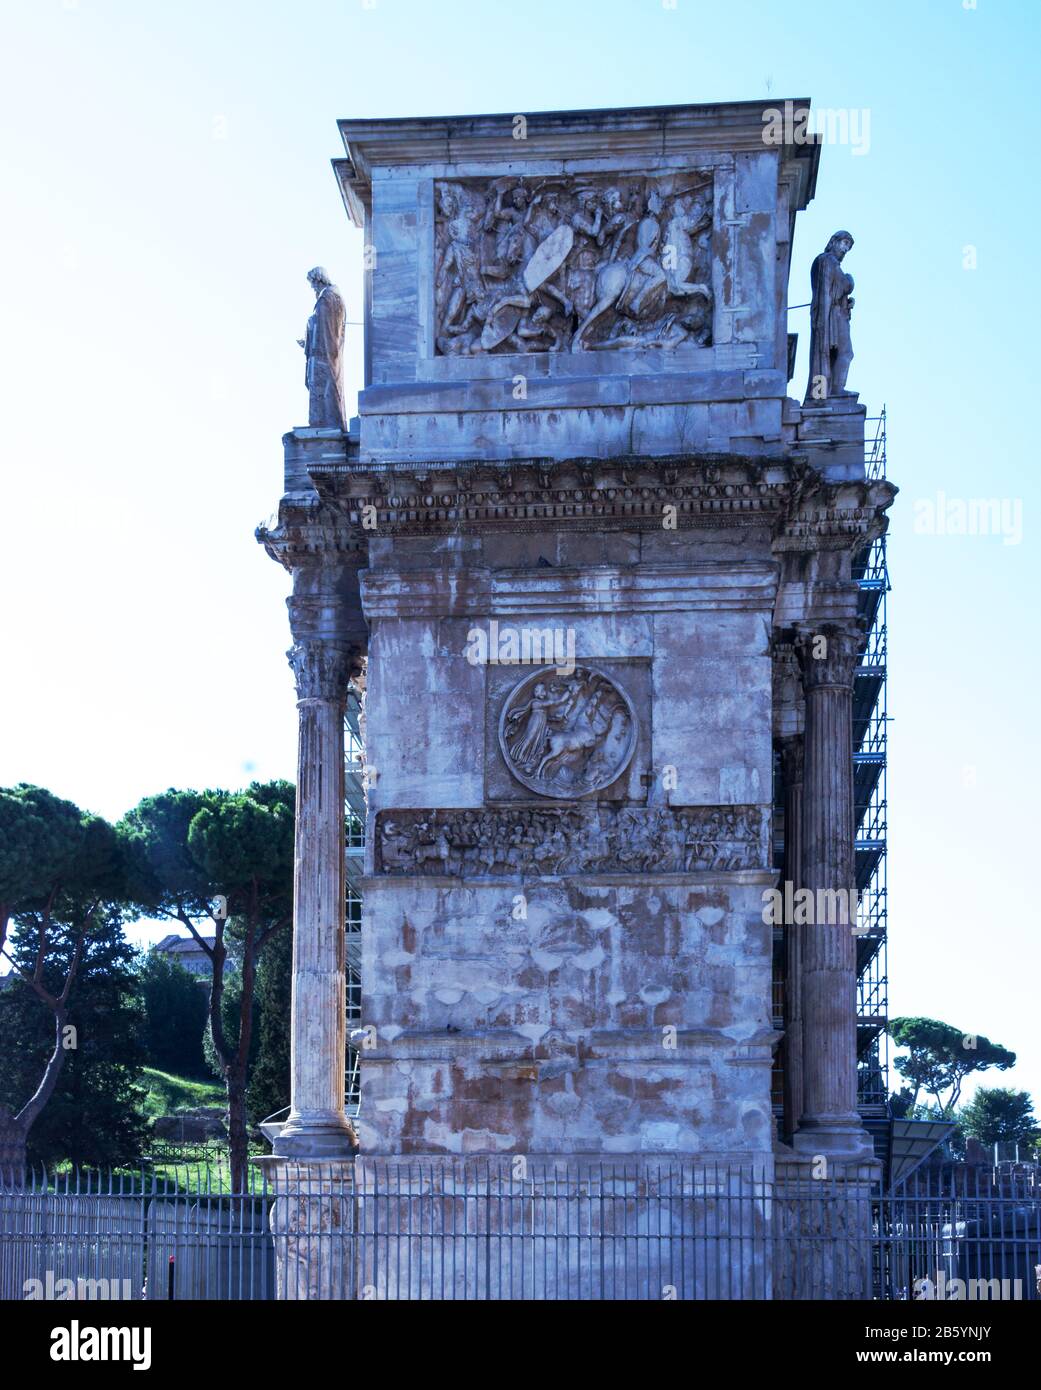 Italia.Roma.l'Arco di Costantino dal 312 al 315 d.C. un tributo al primo Imperatore Cristiano.in restauro nel 2013. Foto Stock